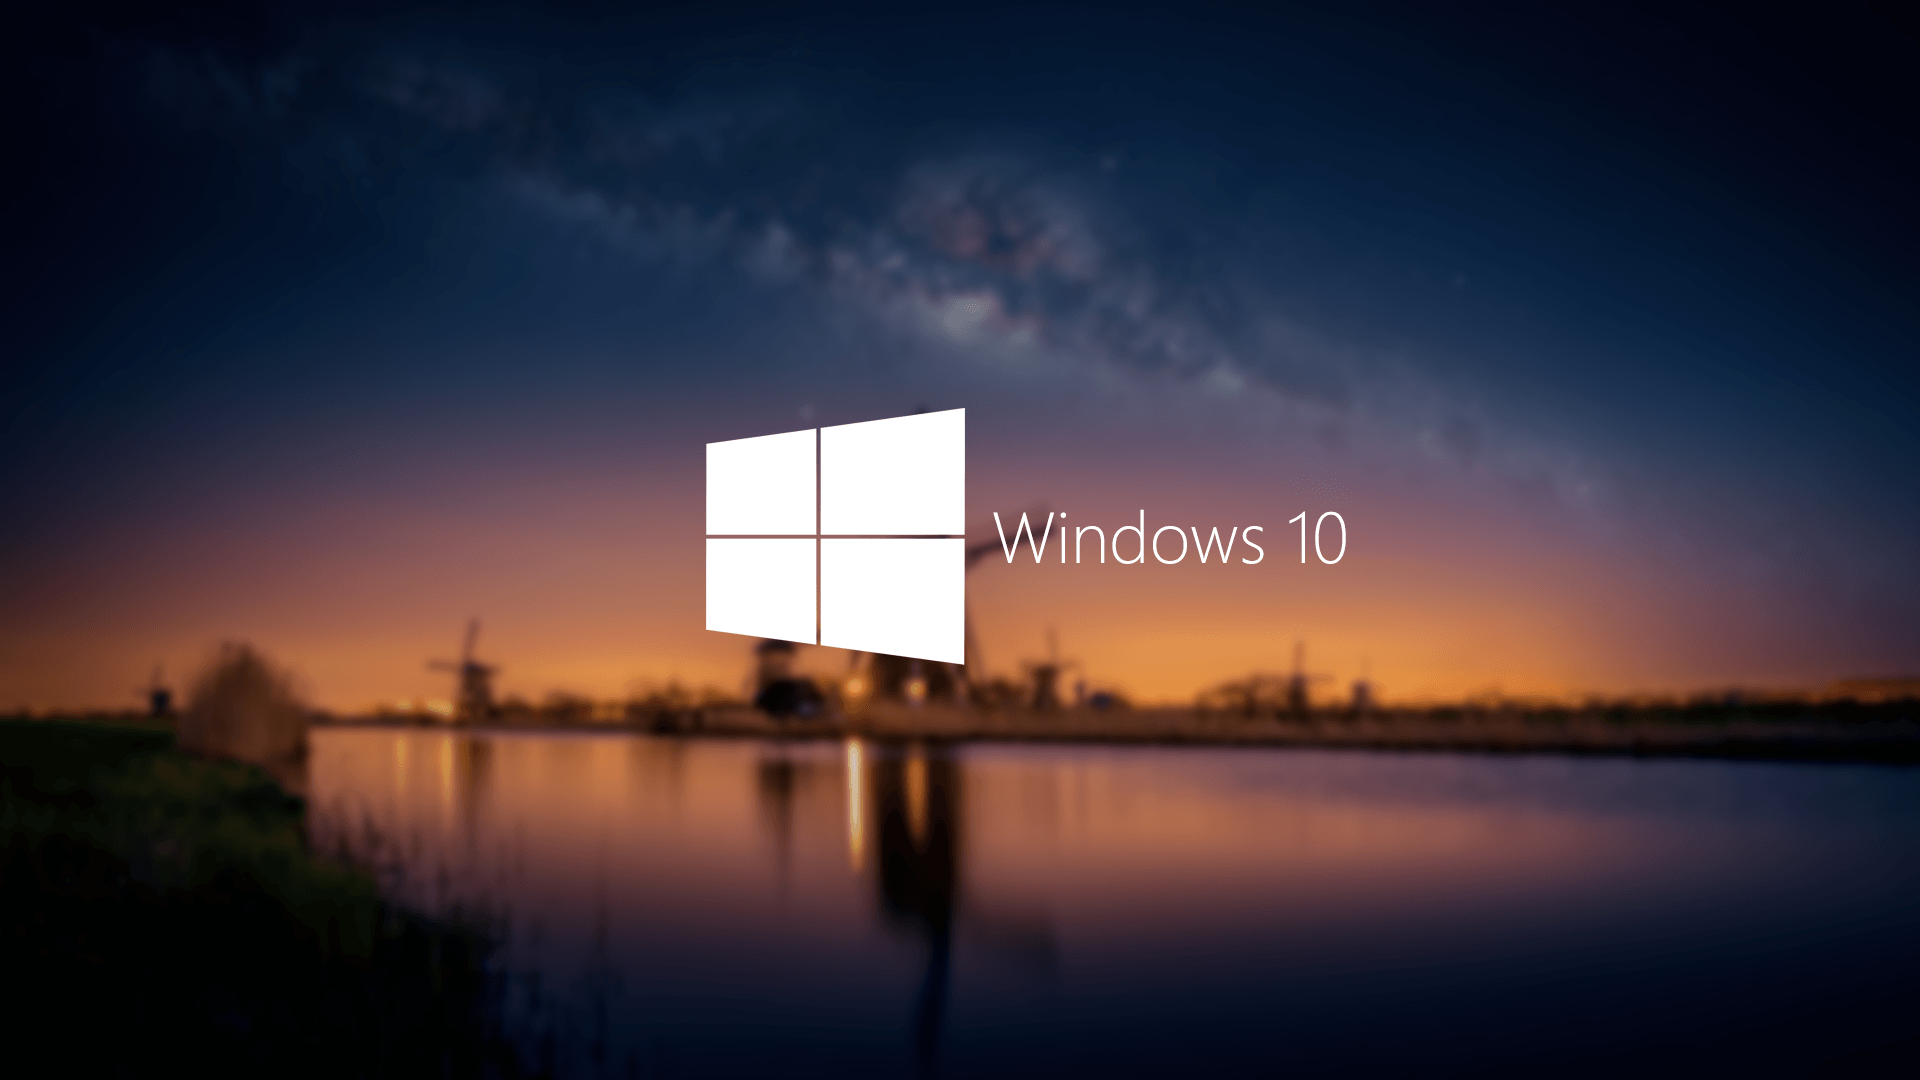 Fondos de pantalla de Windows 10 - FondosMil